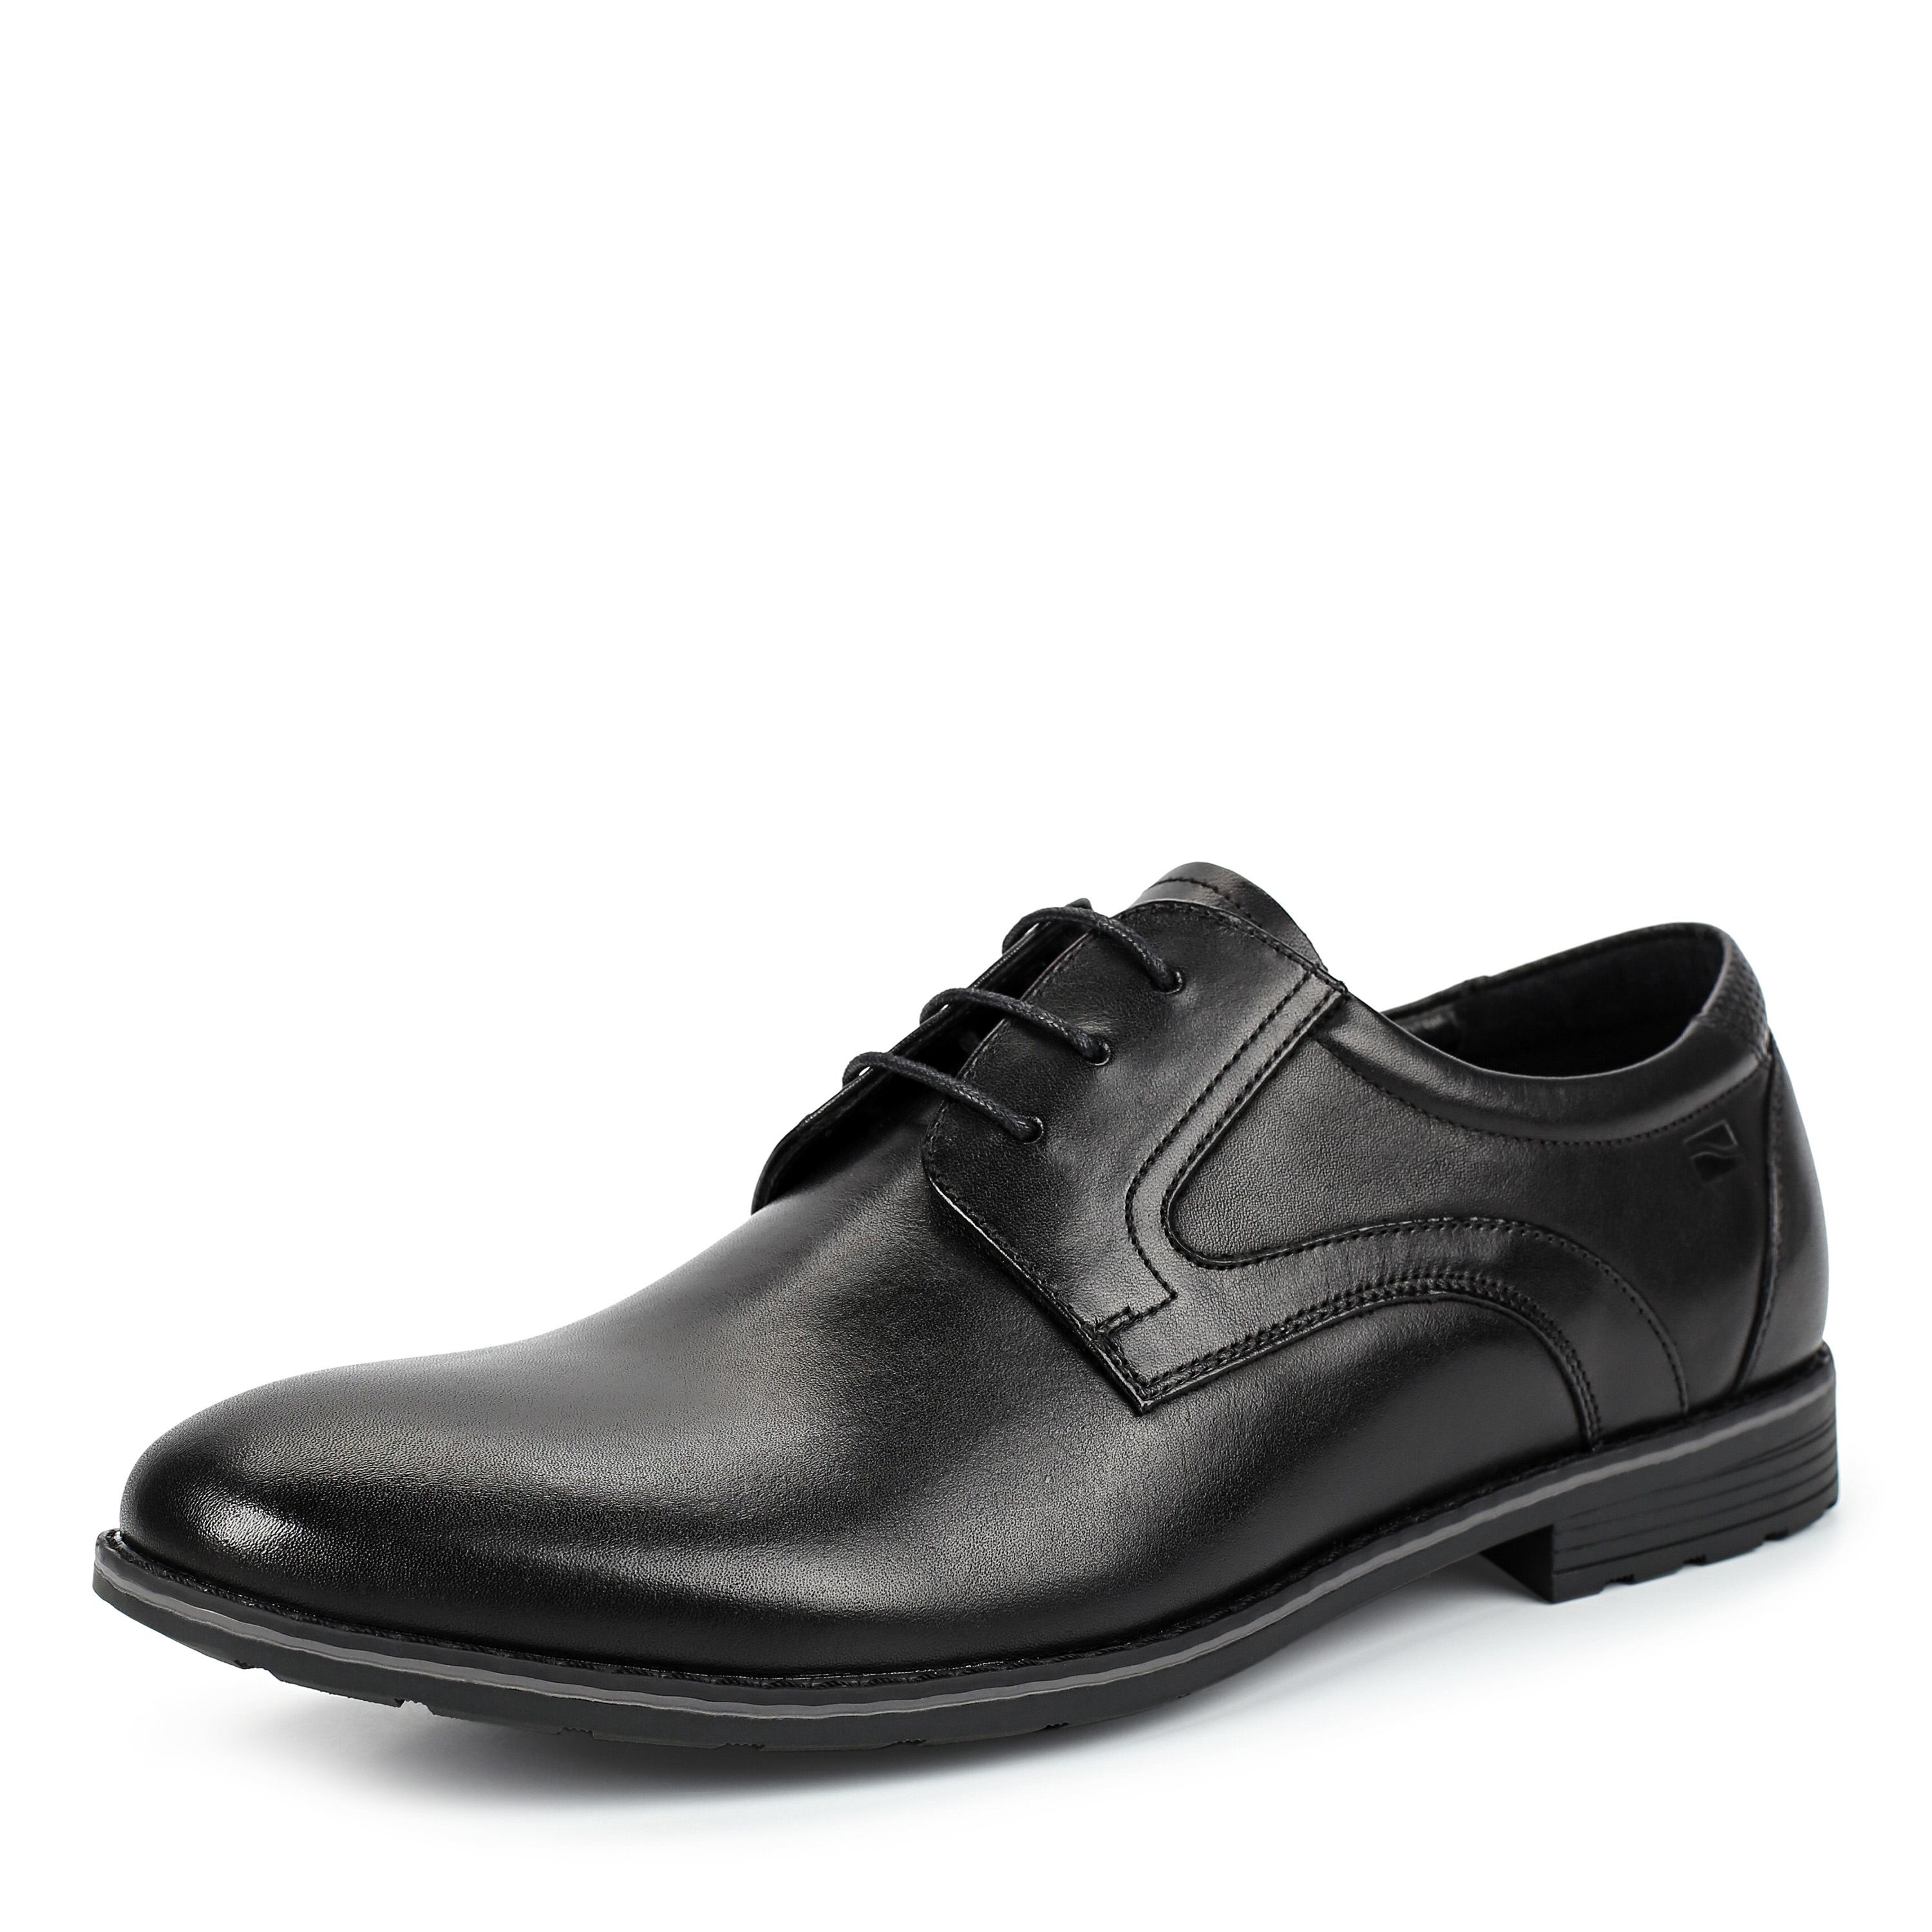 Туфли Thomas Munz 58-072A-1101, цвет черный, размер 41 - фото 2